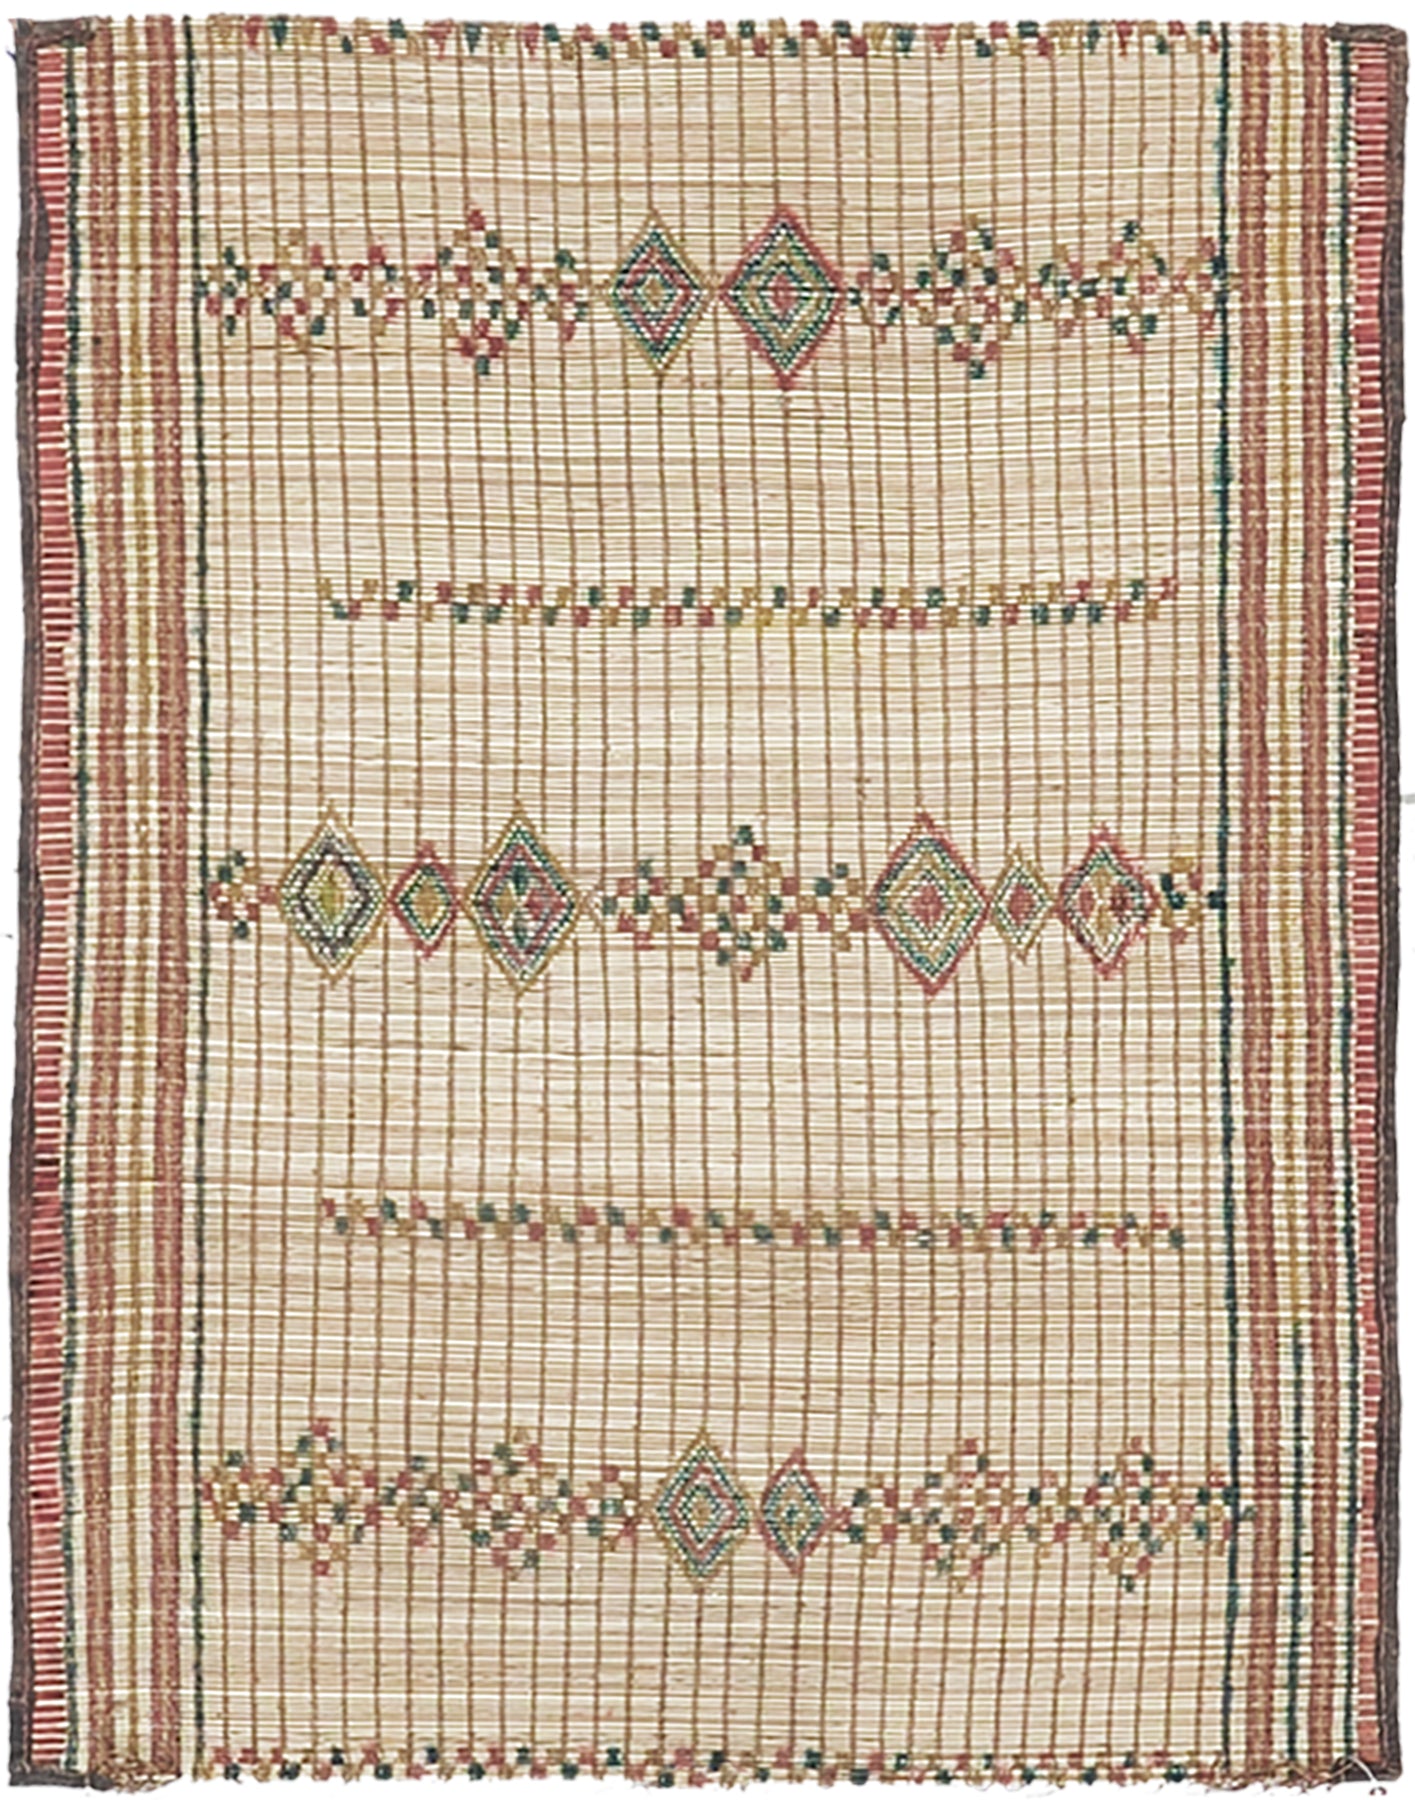 Vintage African Tuareg Mat